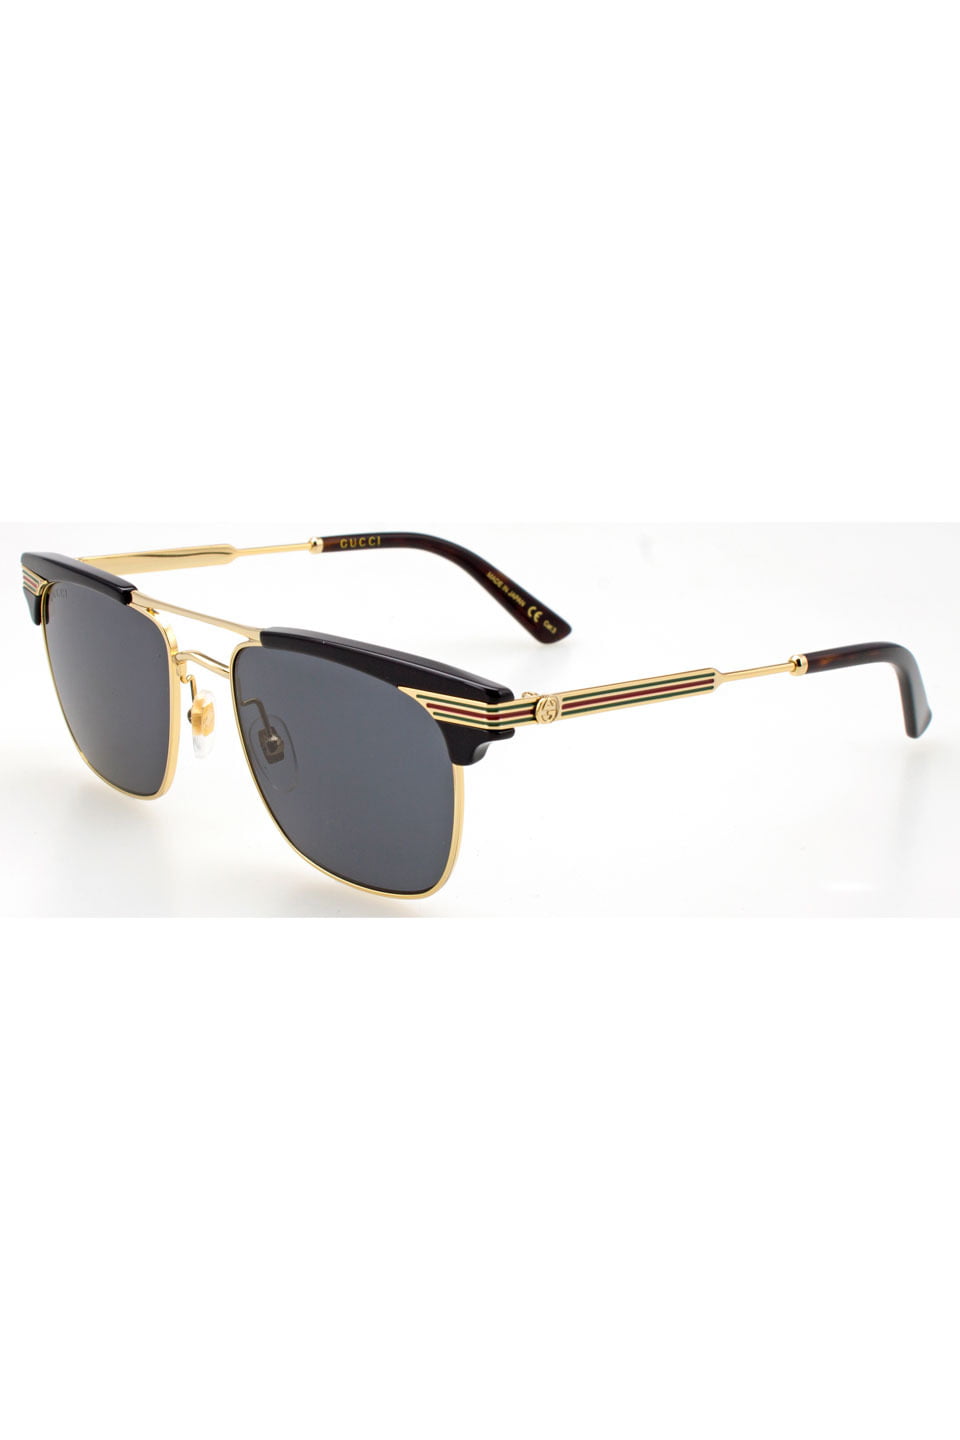 gucci sunglasses gg0287s